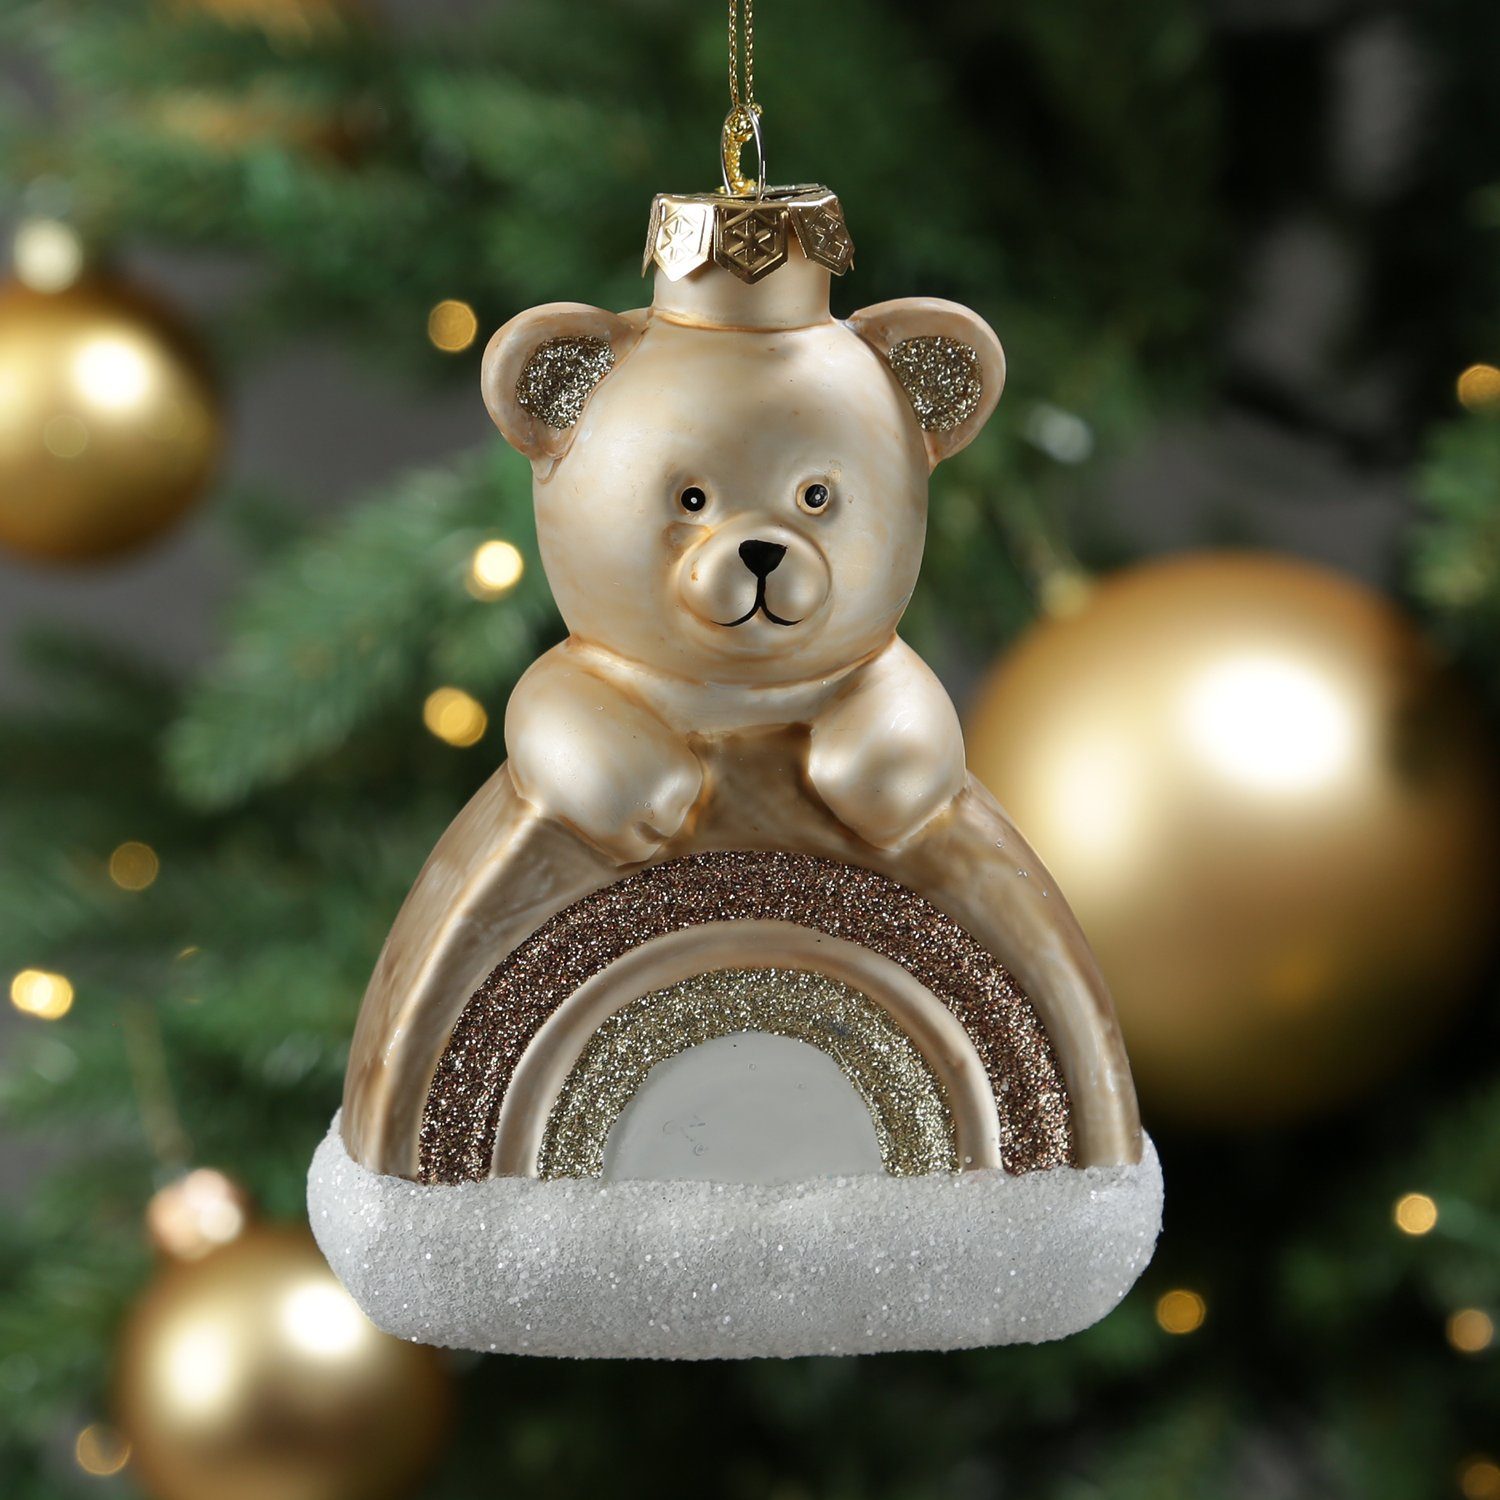 MARELIDA Christbaumschmuck Weihnachtsbaumschmuck Teddybär mit Regenbogen Glas H: 13,5cm braun